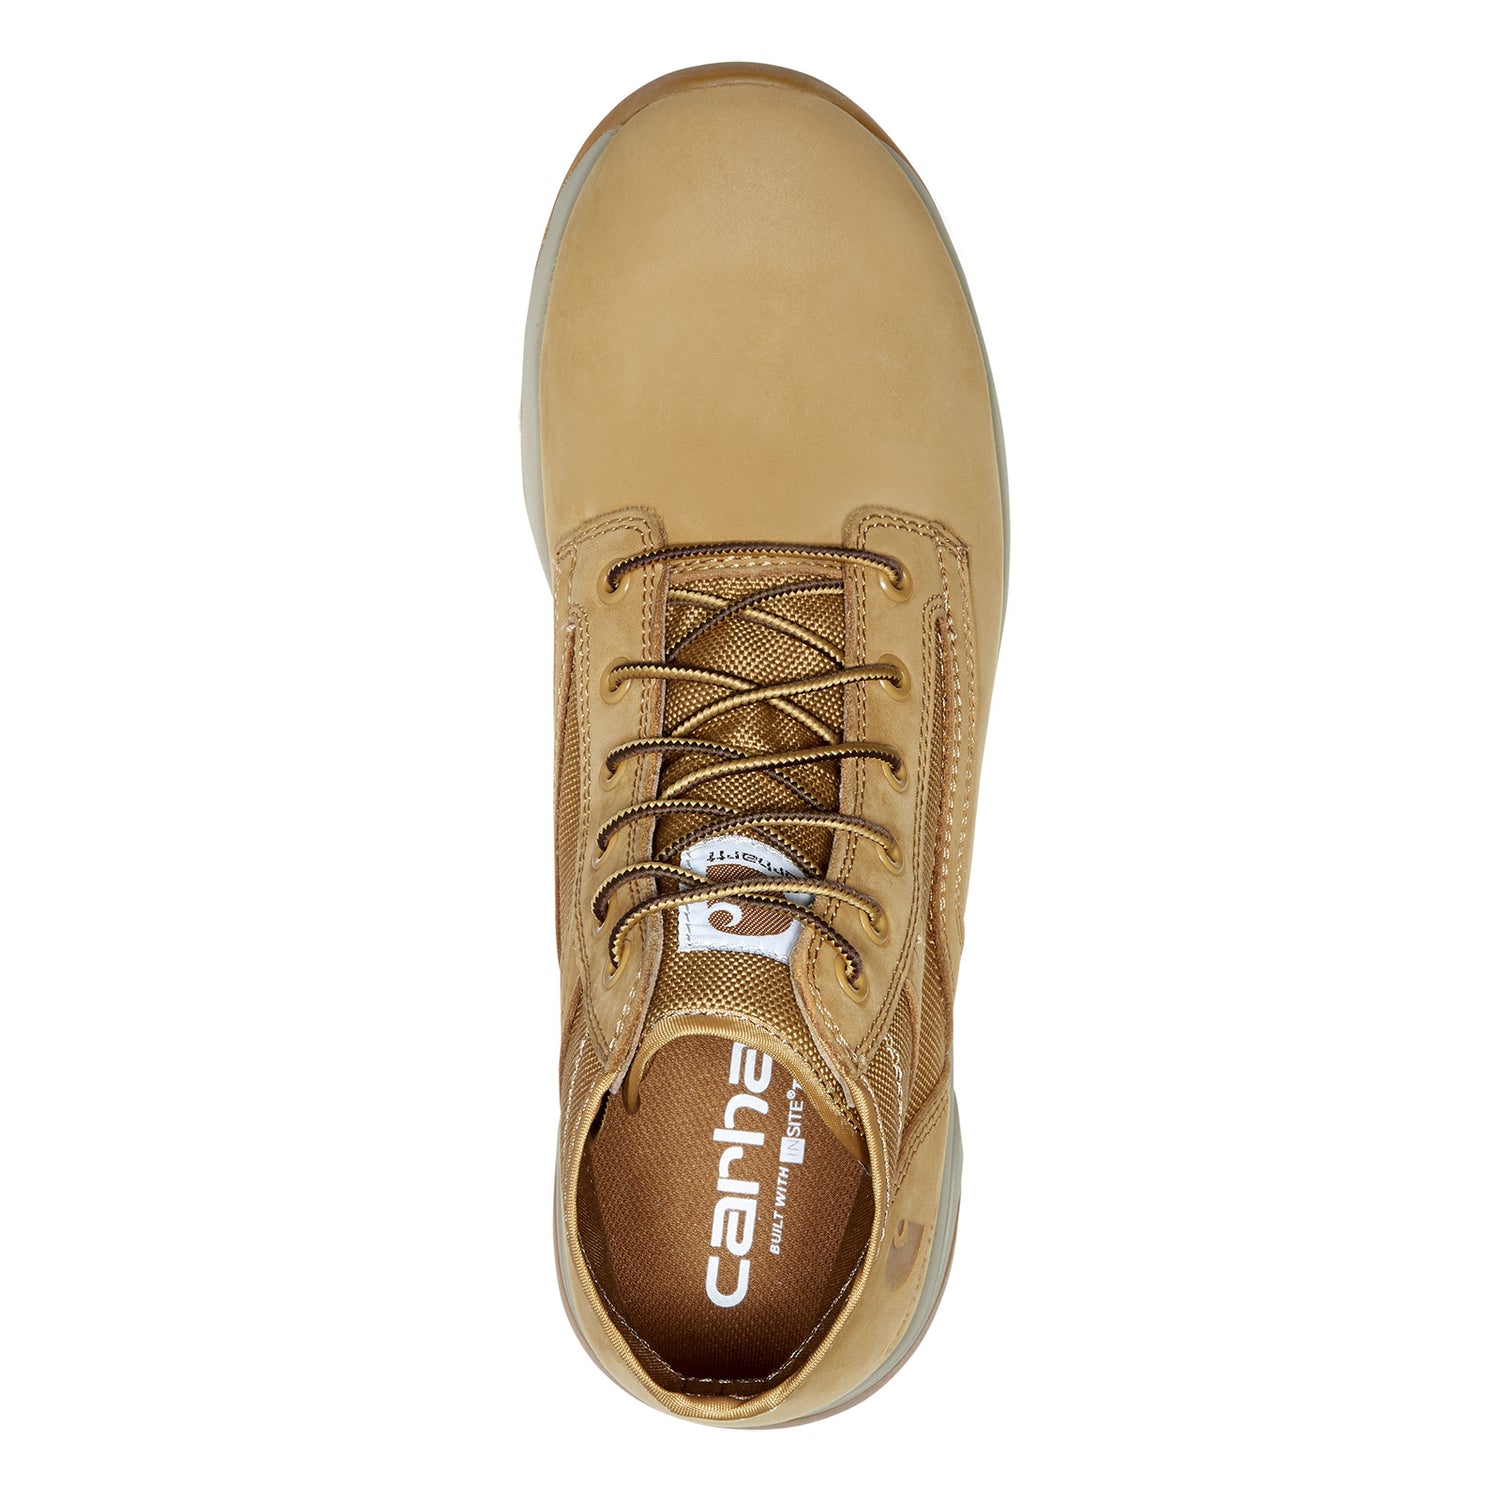 Peltz Shoes  Men's Carhartt Force 5in Soft Toe Sneaker Boot WHEAT FA5017-M